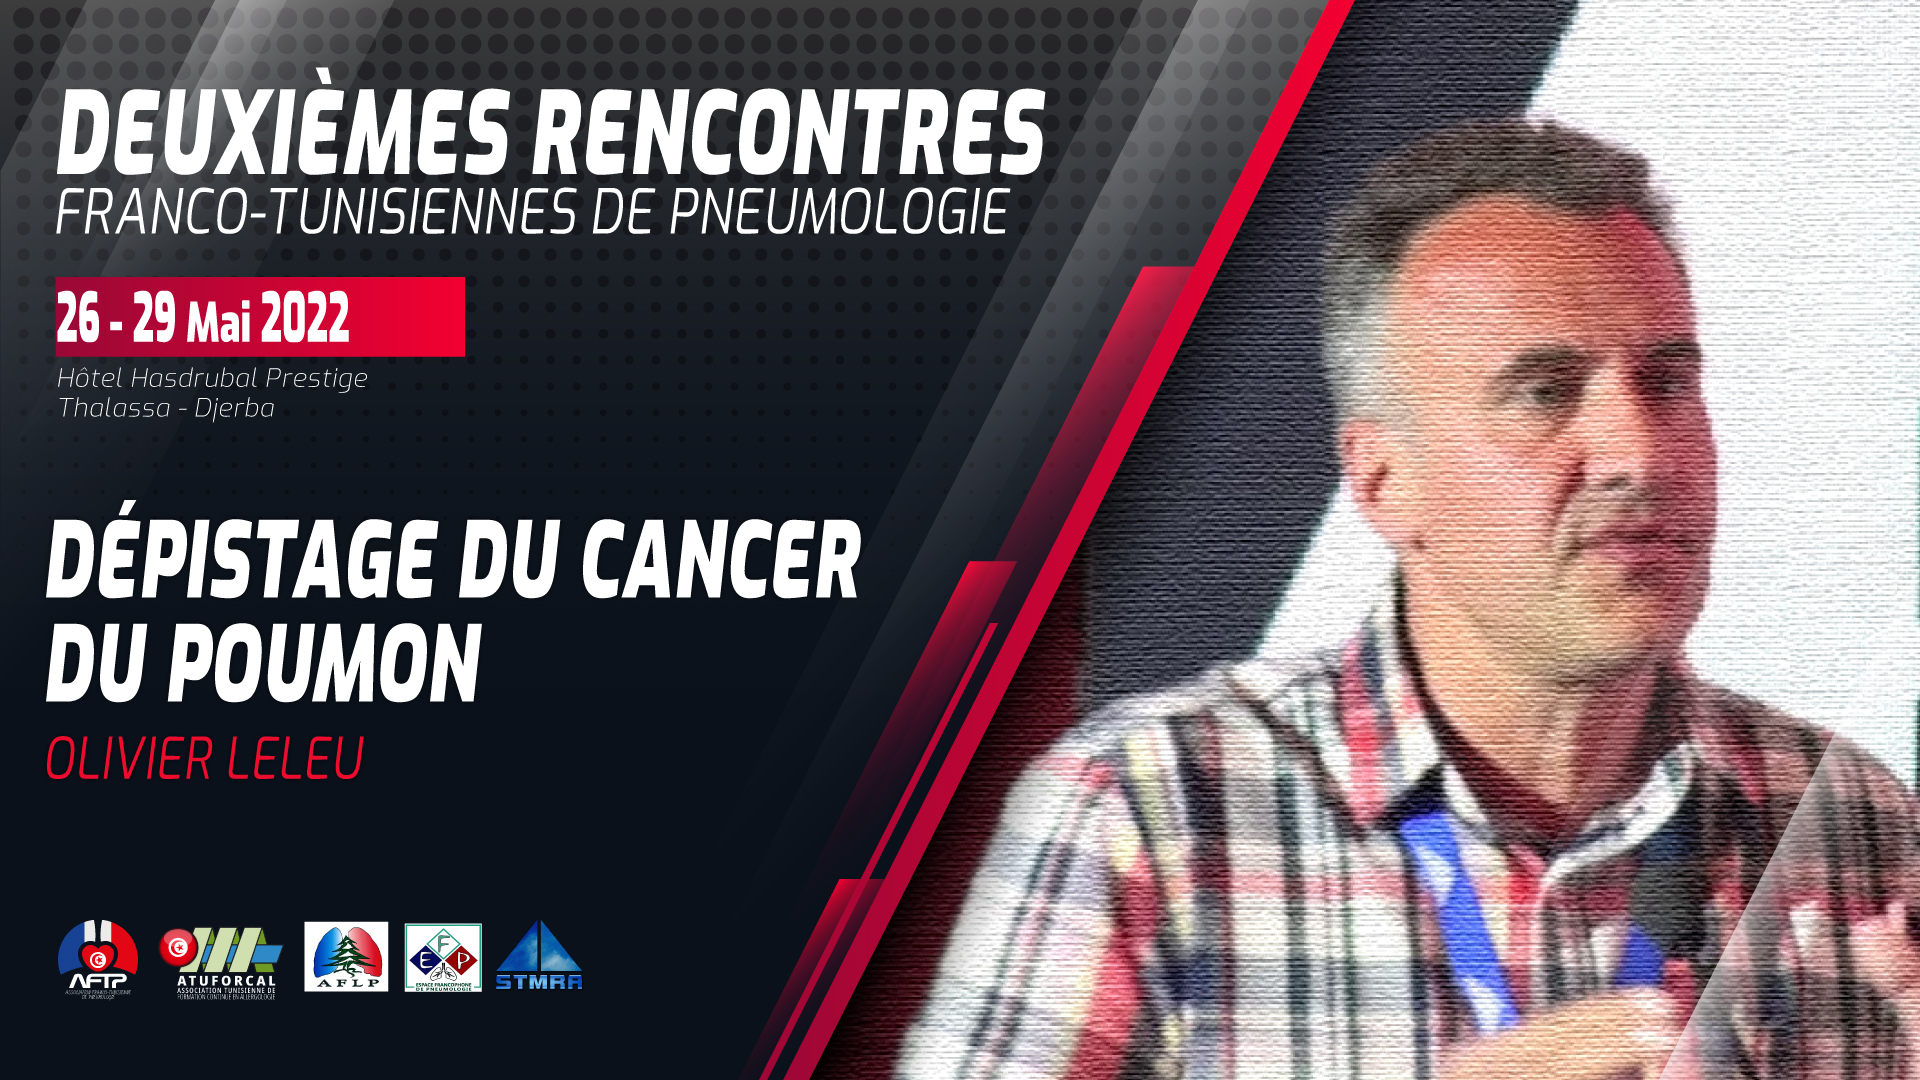 Dépistage du cancer du poumon. Olivier Leleu